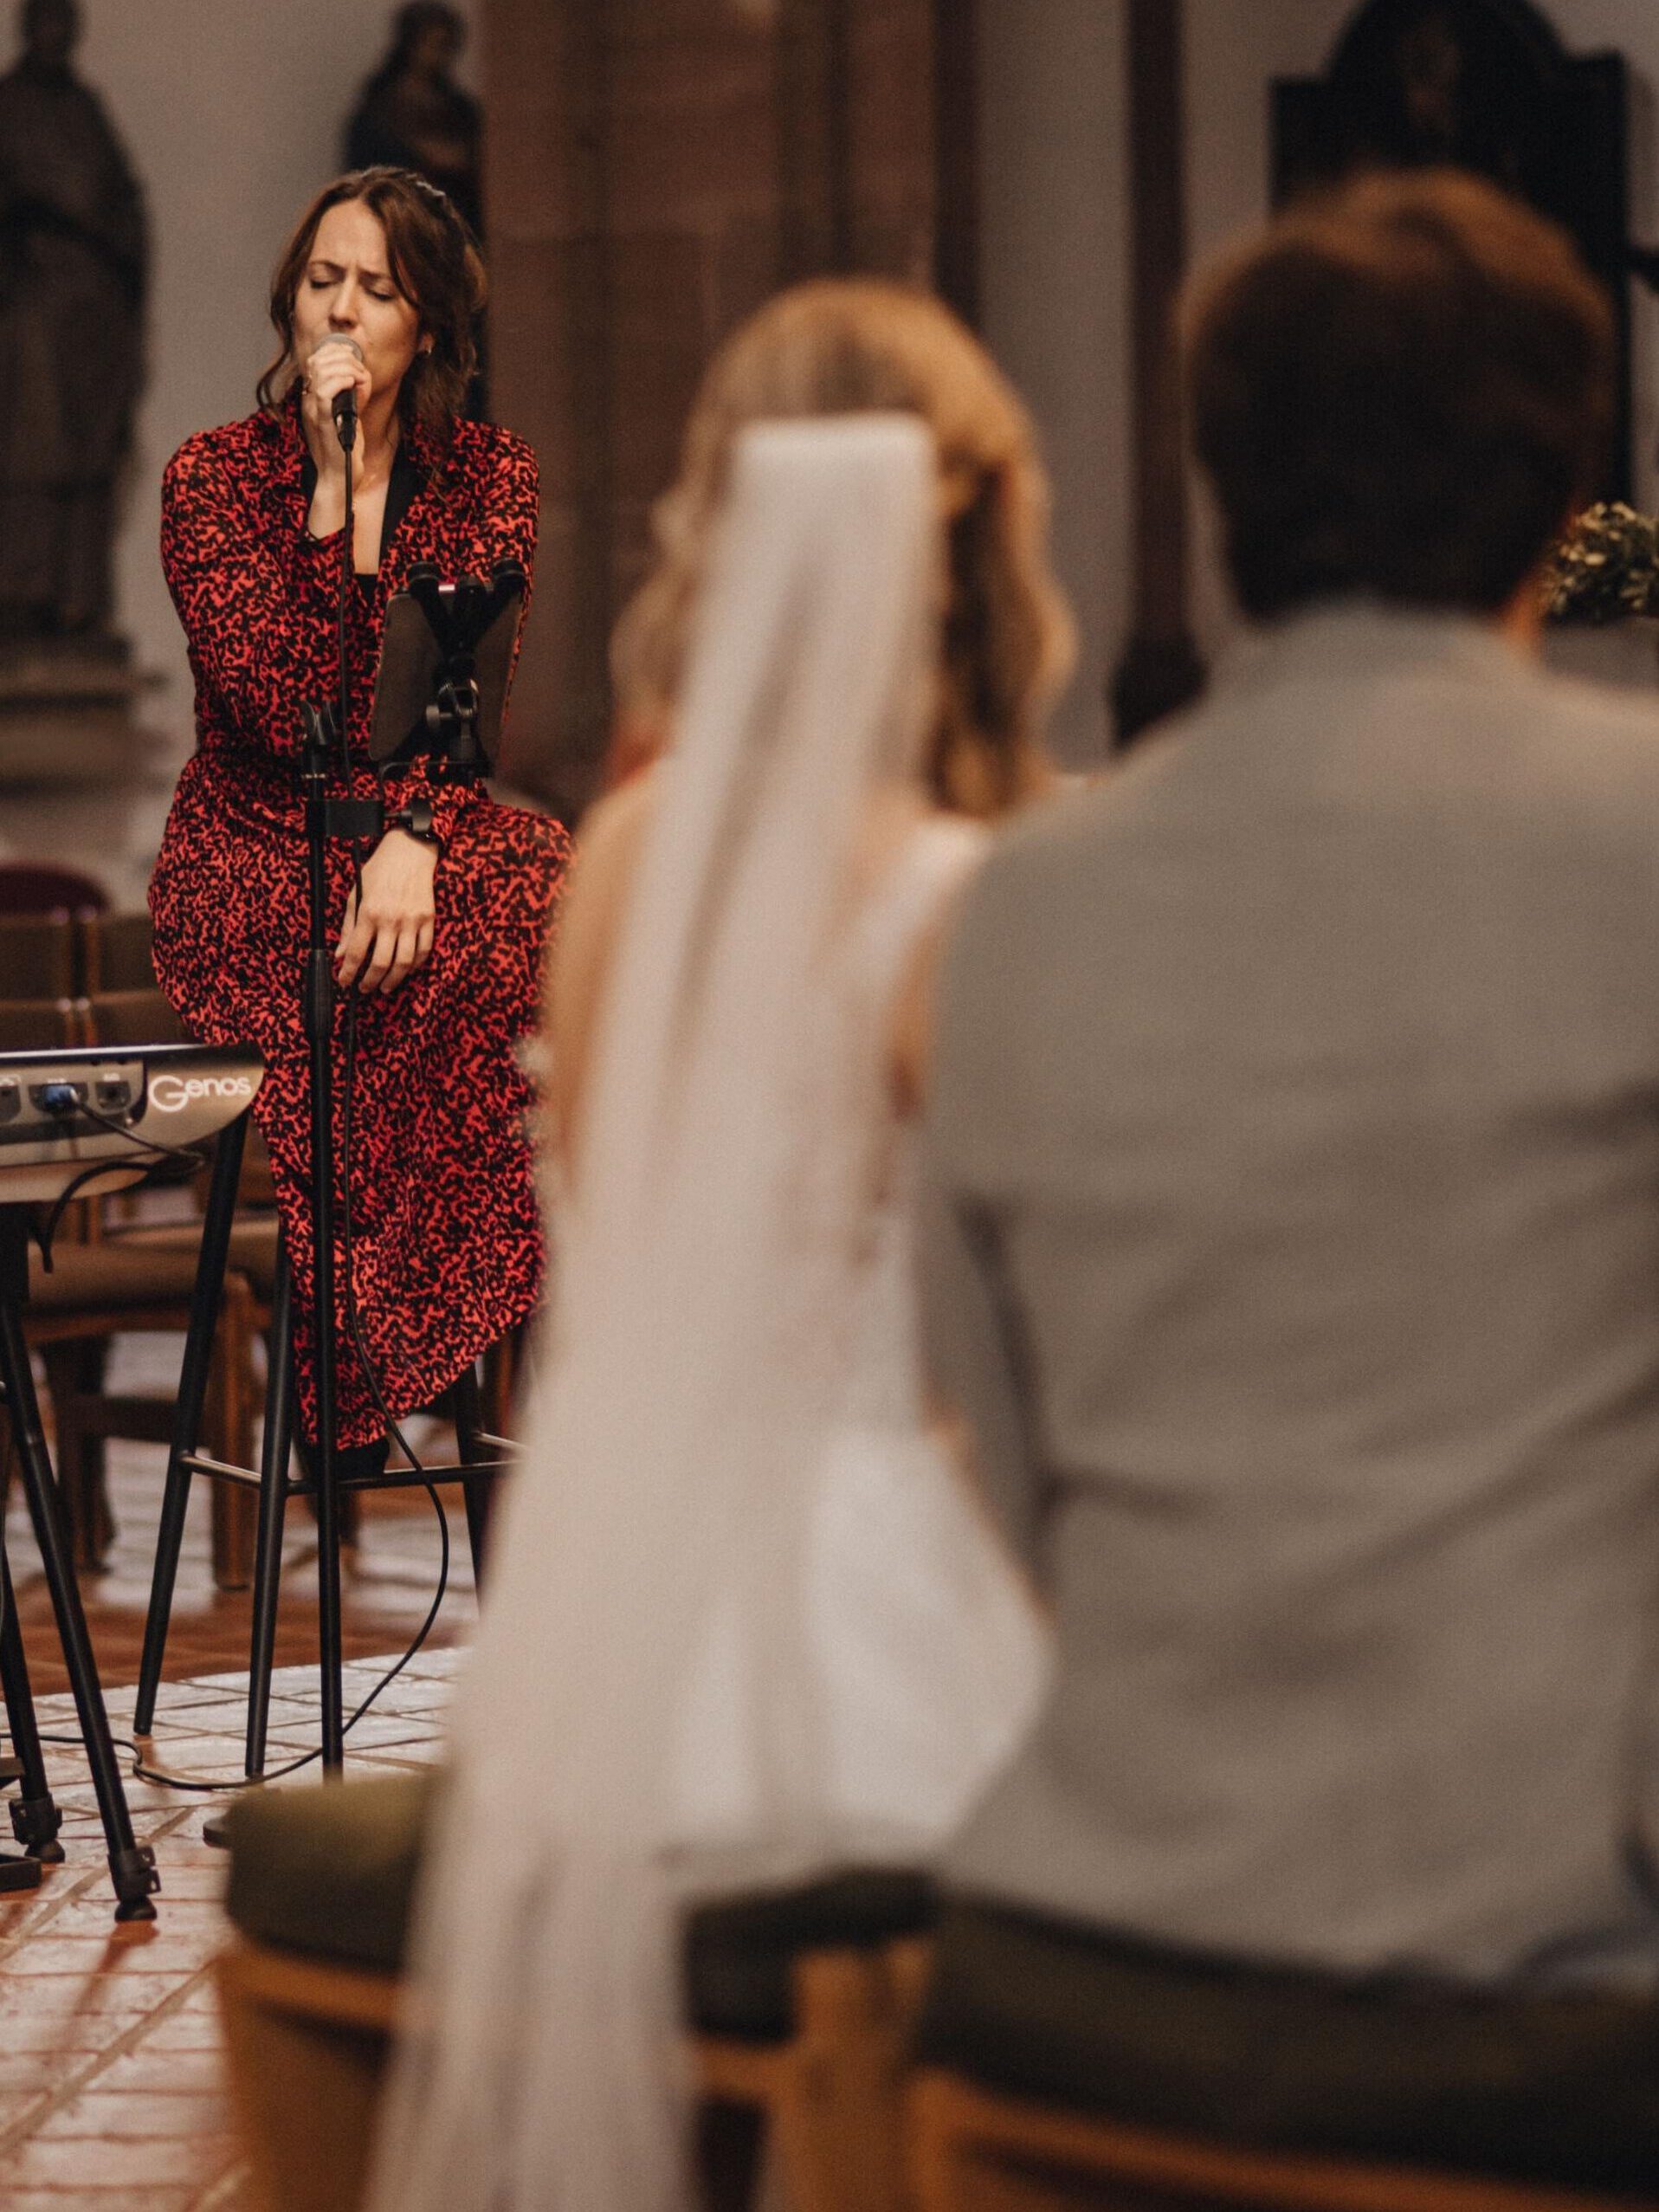 Hochzeitssängerin für kirchliche, freie und standesamtliche Trauung

Foto von https://melanie-nguyen.de/